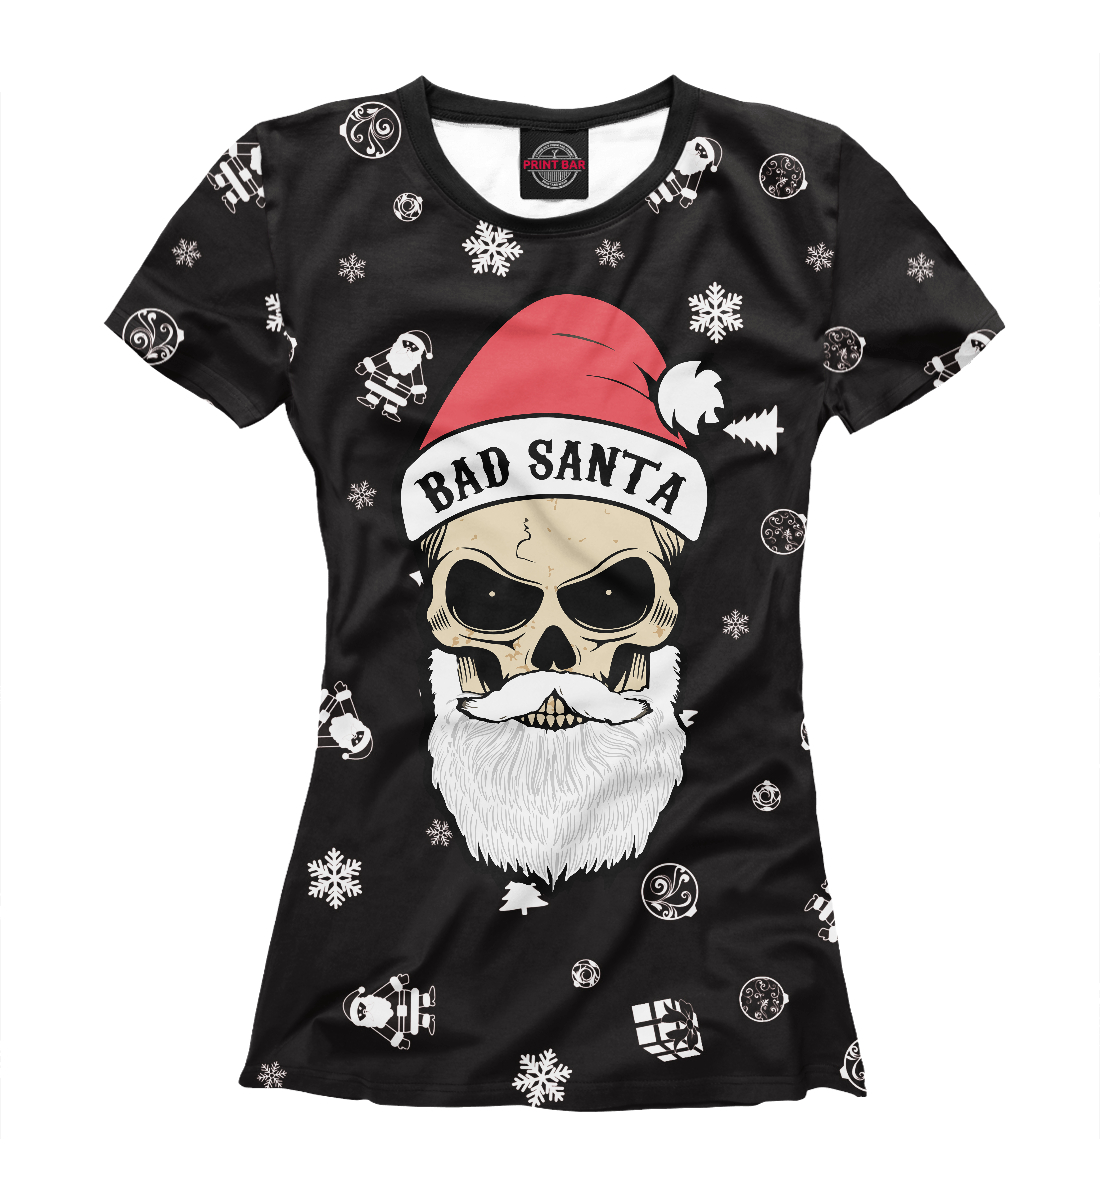 Футболка Bad Santa для девочек, артикул: DMZ-898025-fut-1mp